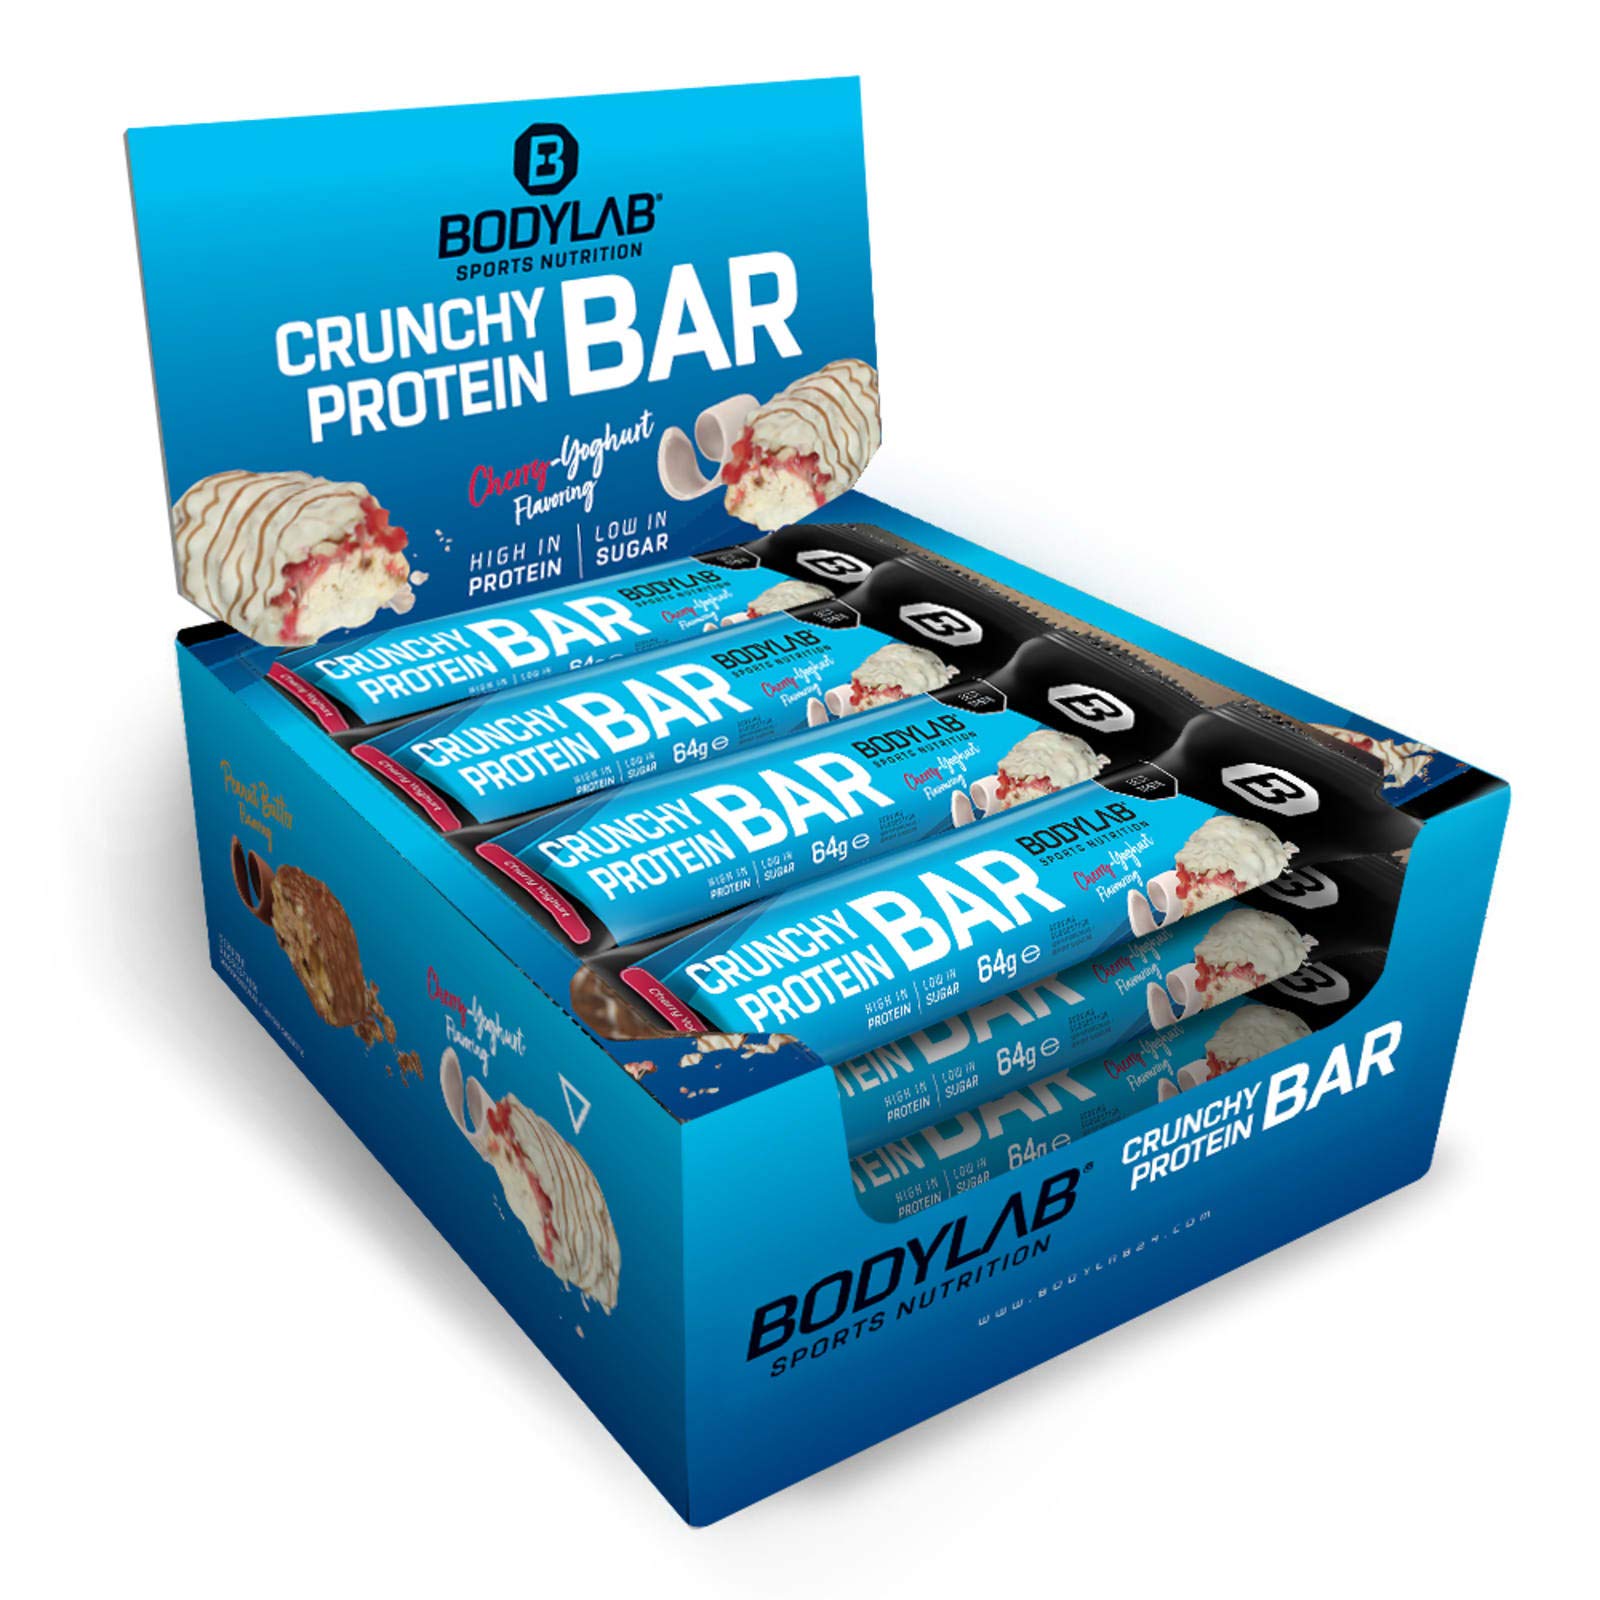 Bodylab24 Crunchy Protein Bar Cherry Joghurt 12 x 64g Vorratsbox, knuspriger Protein-Riegel mit Schokoladenüberzug, mit 20g Eiweiß pro Riegel, High-Protein Low-Sugar, Eiweiß-Riegel mit wenig Zucker